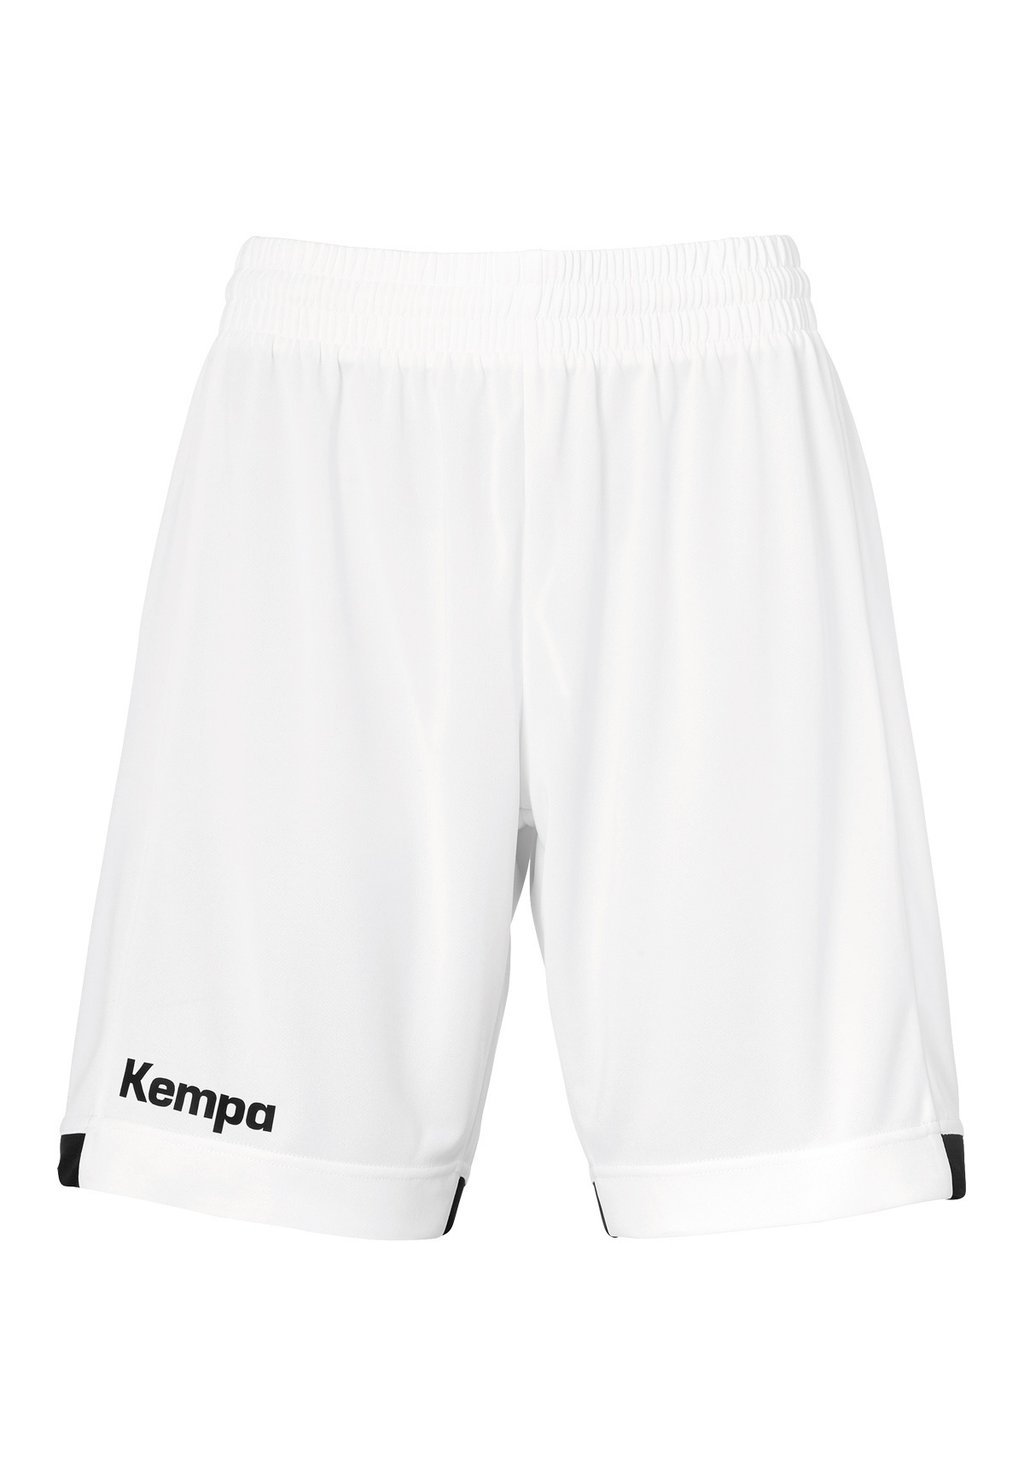 Спортивные шорты PLAYER LONG Kempa, цвет weiß schwarz